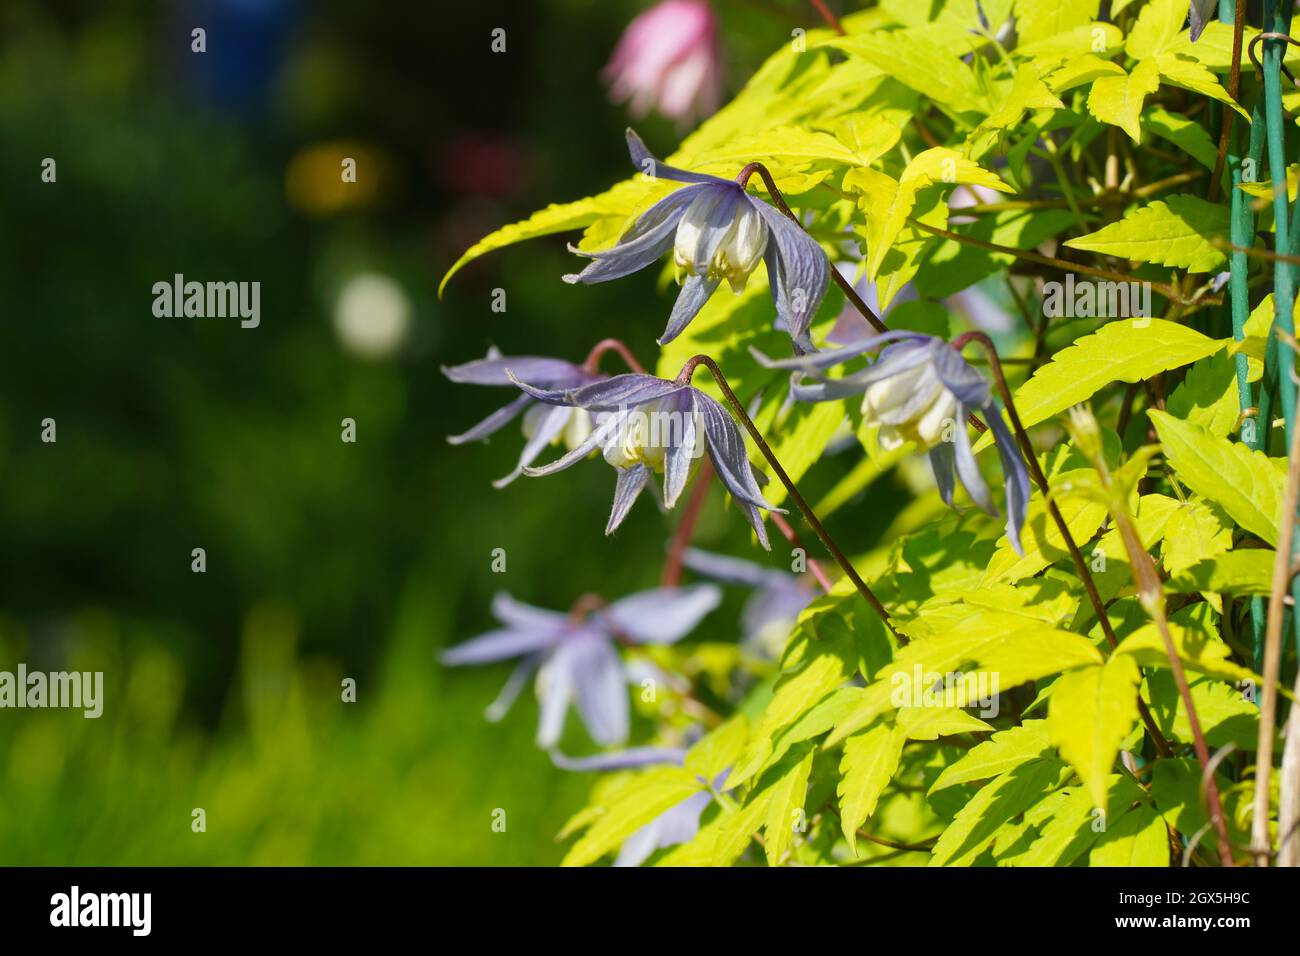 Blaue Doppel-Atragene (clematis) Sorte Stolwijk Gold blüht im Garten. Clematis mit goldgelben Blättern. Stockfoto